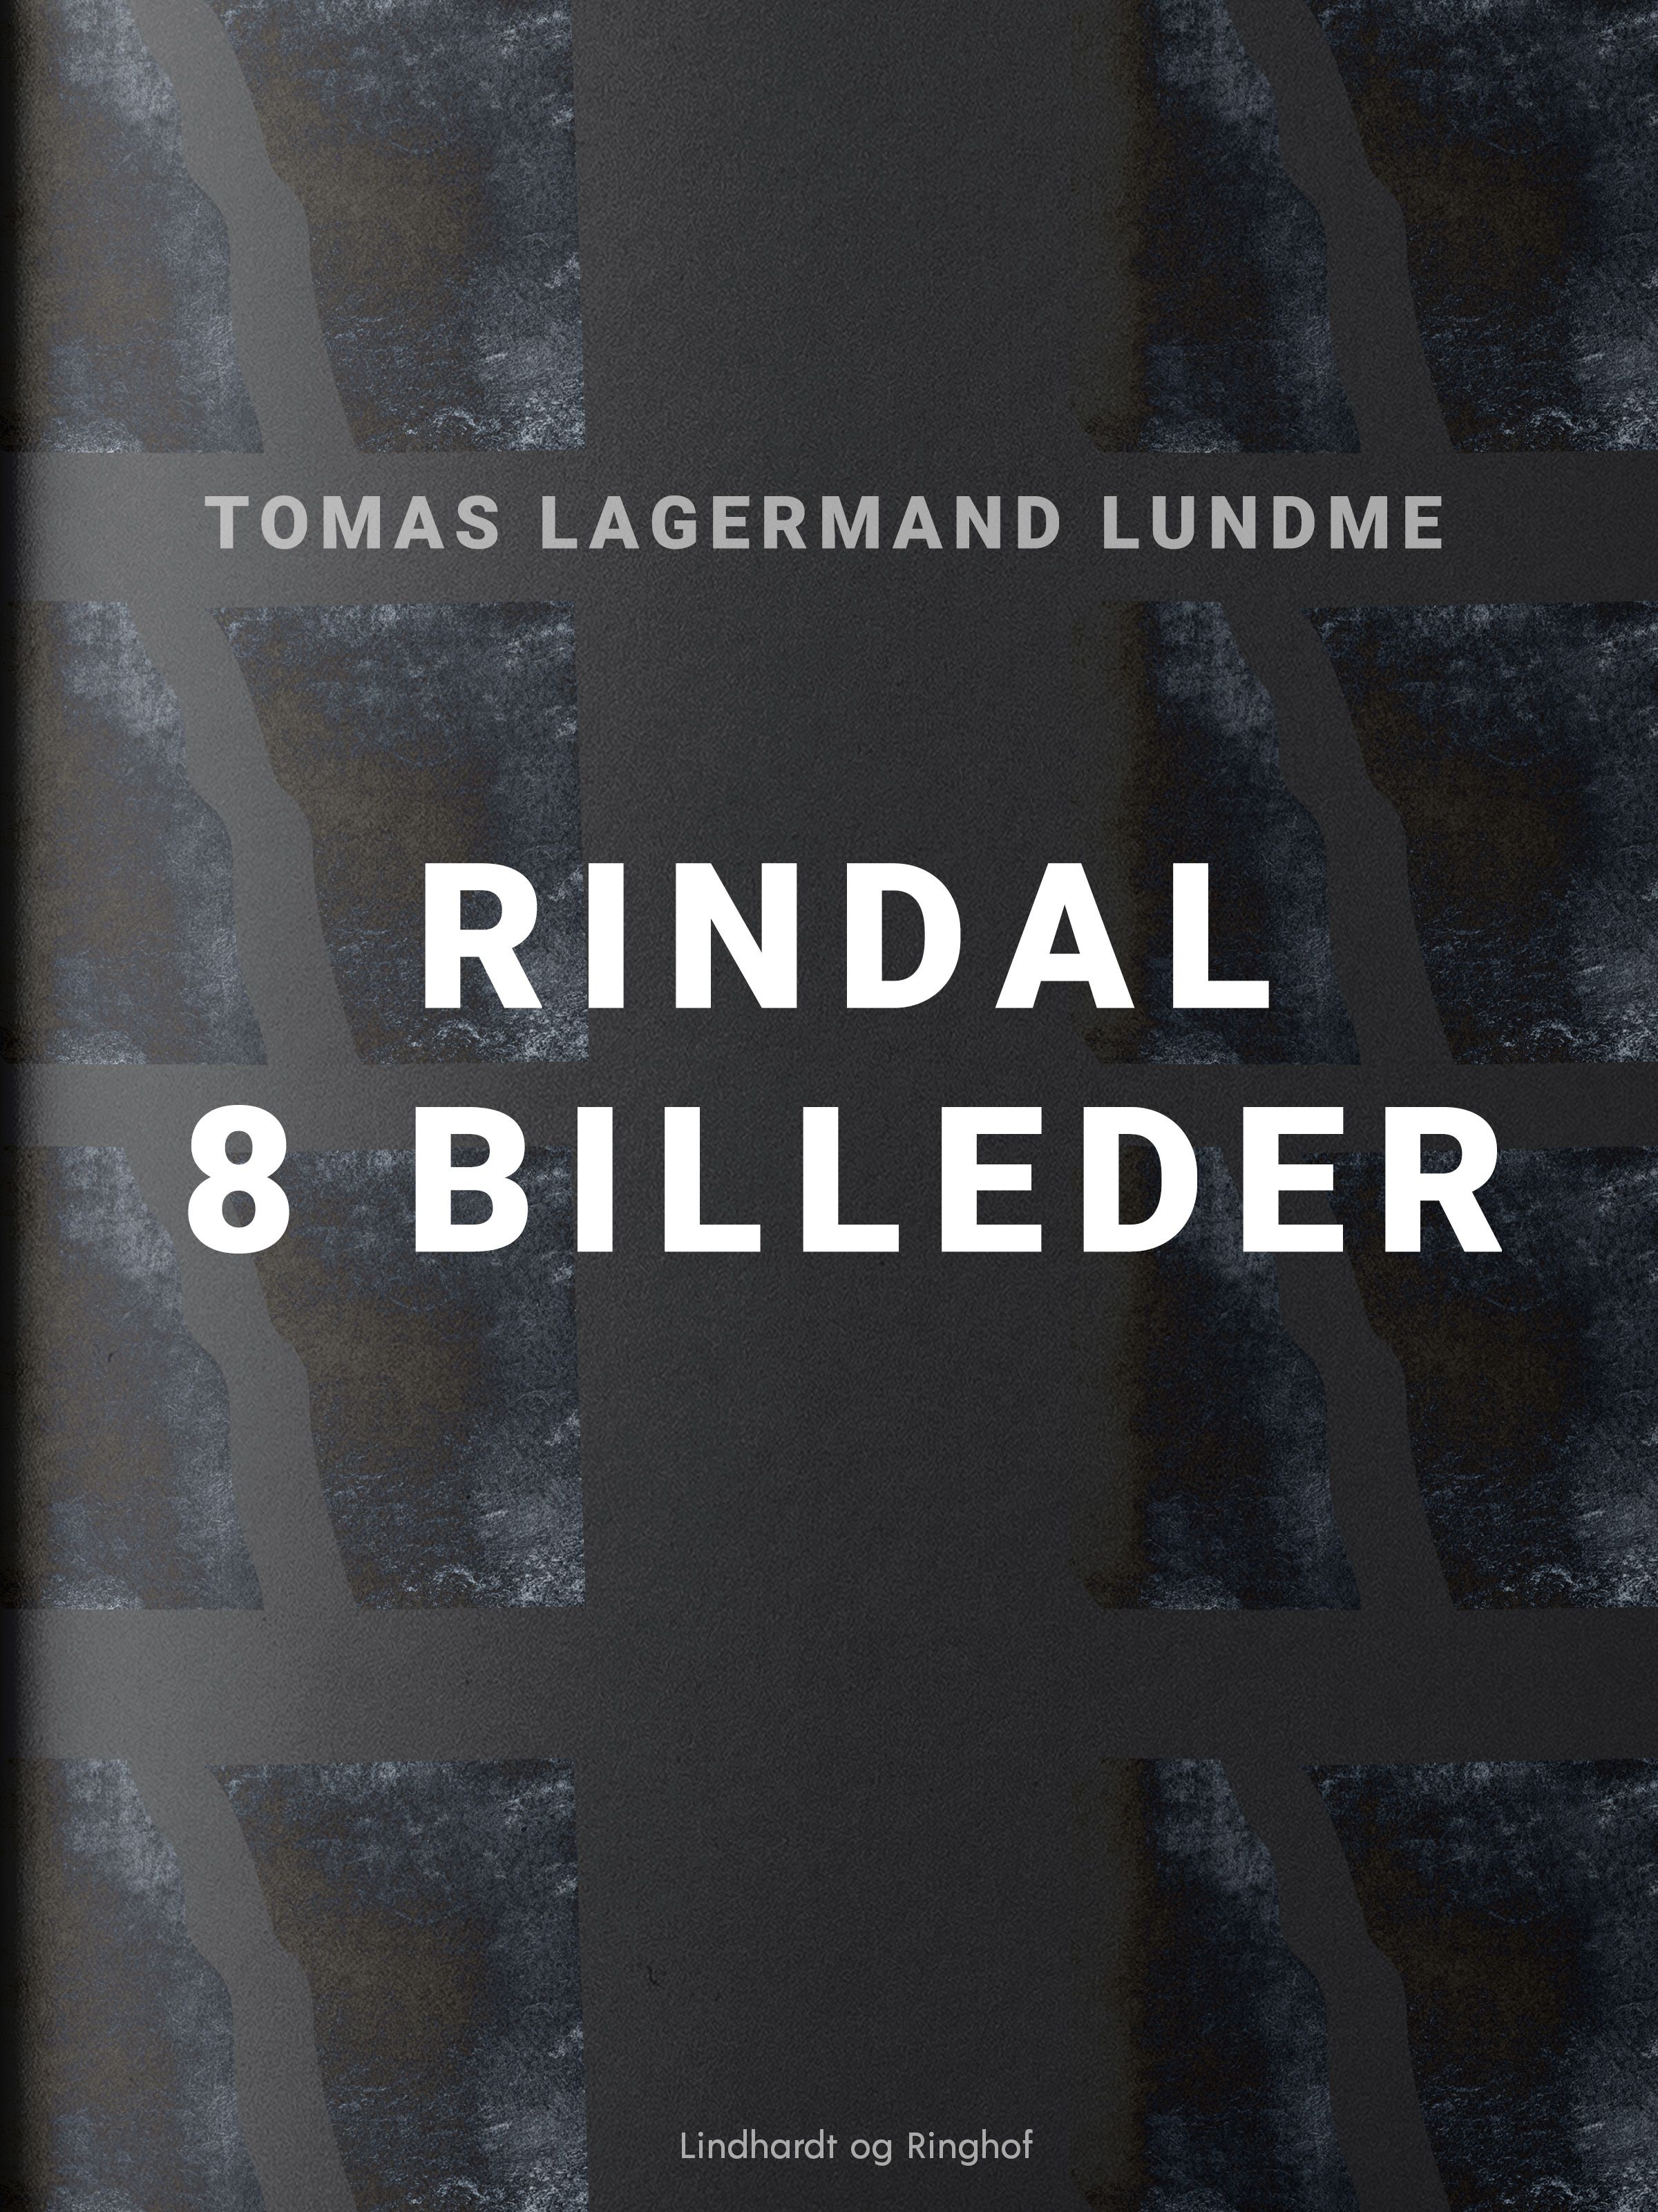 Rindal - 8 billeder, eBook by Tomas Lagermand Lundme